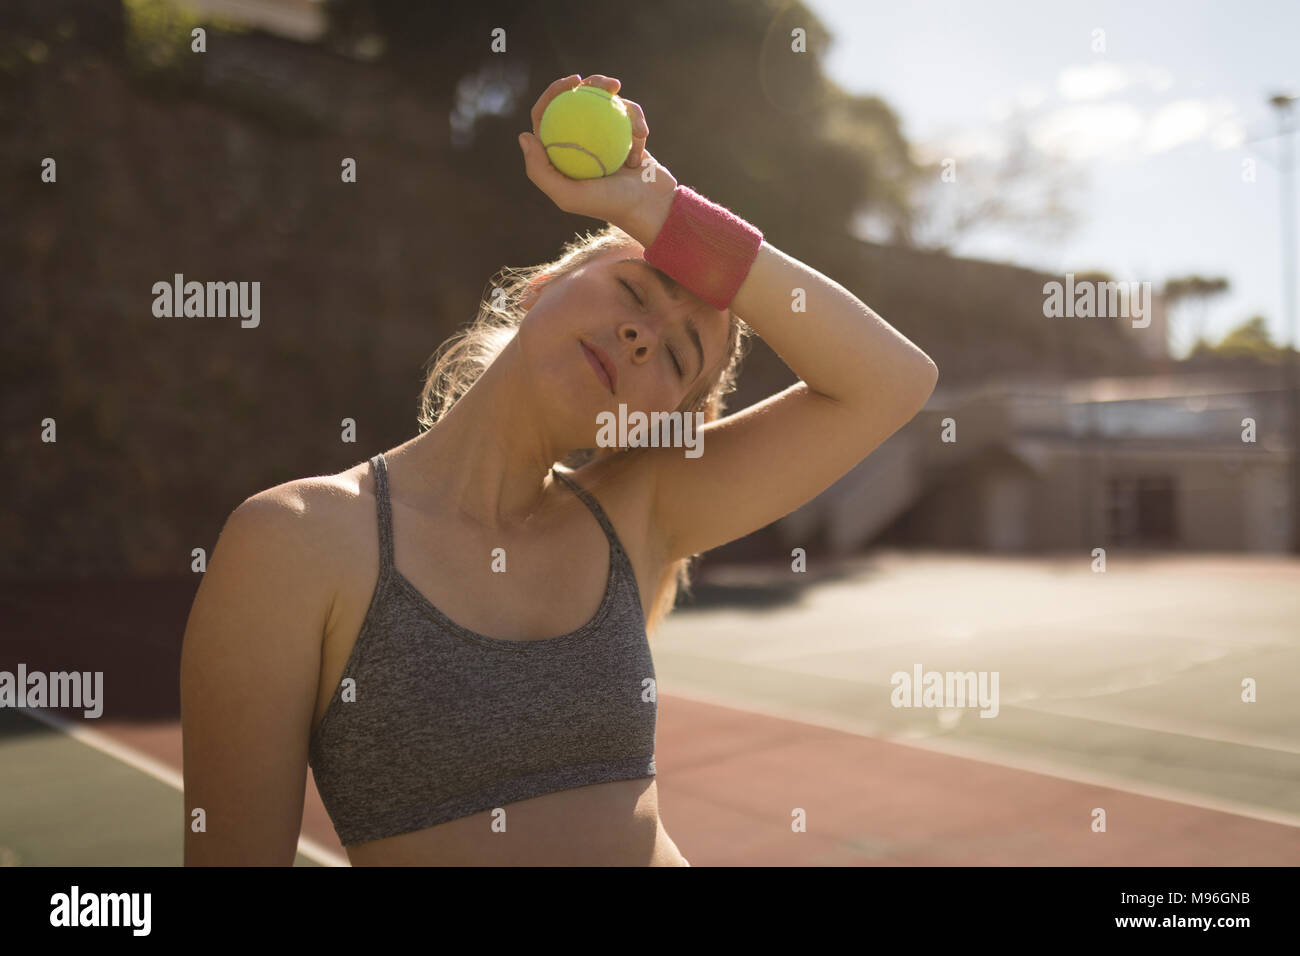 Mujer sudoración mientras juega al tenis en la pista de tenis. Foto de stock